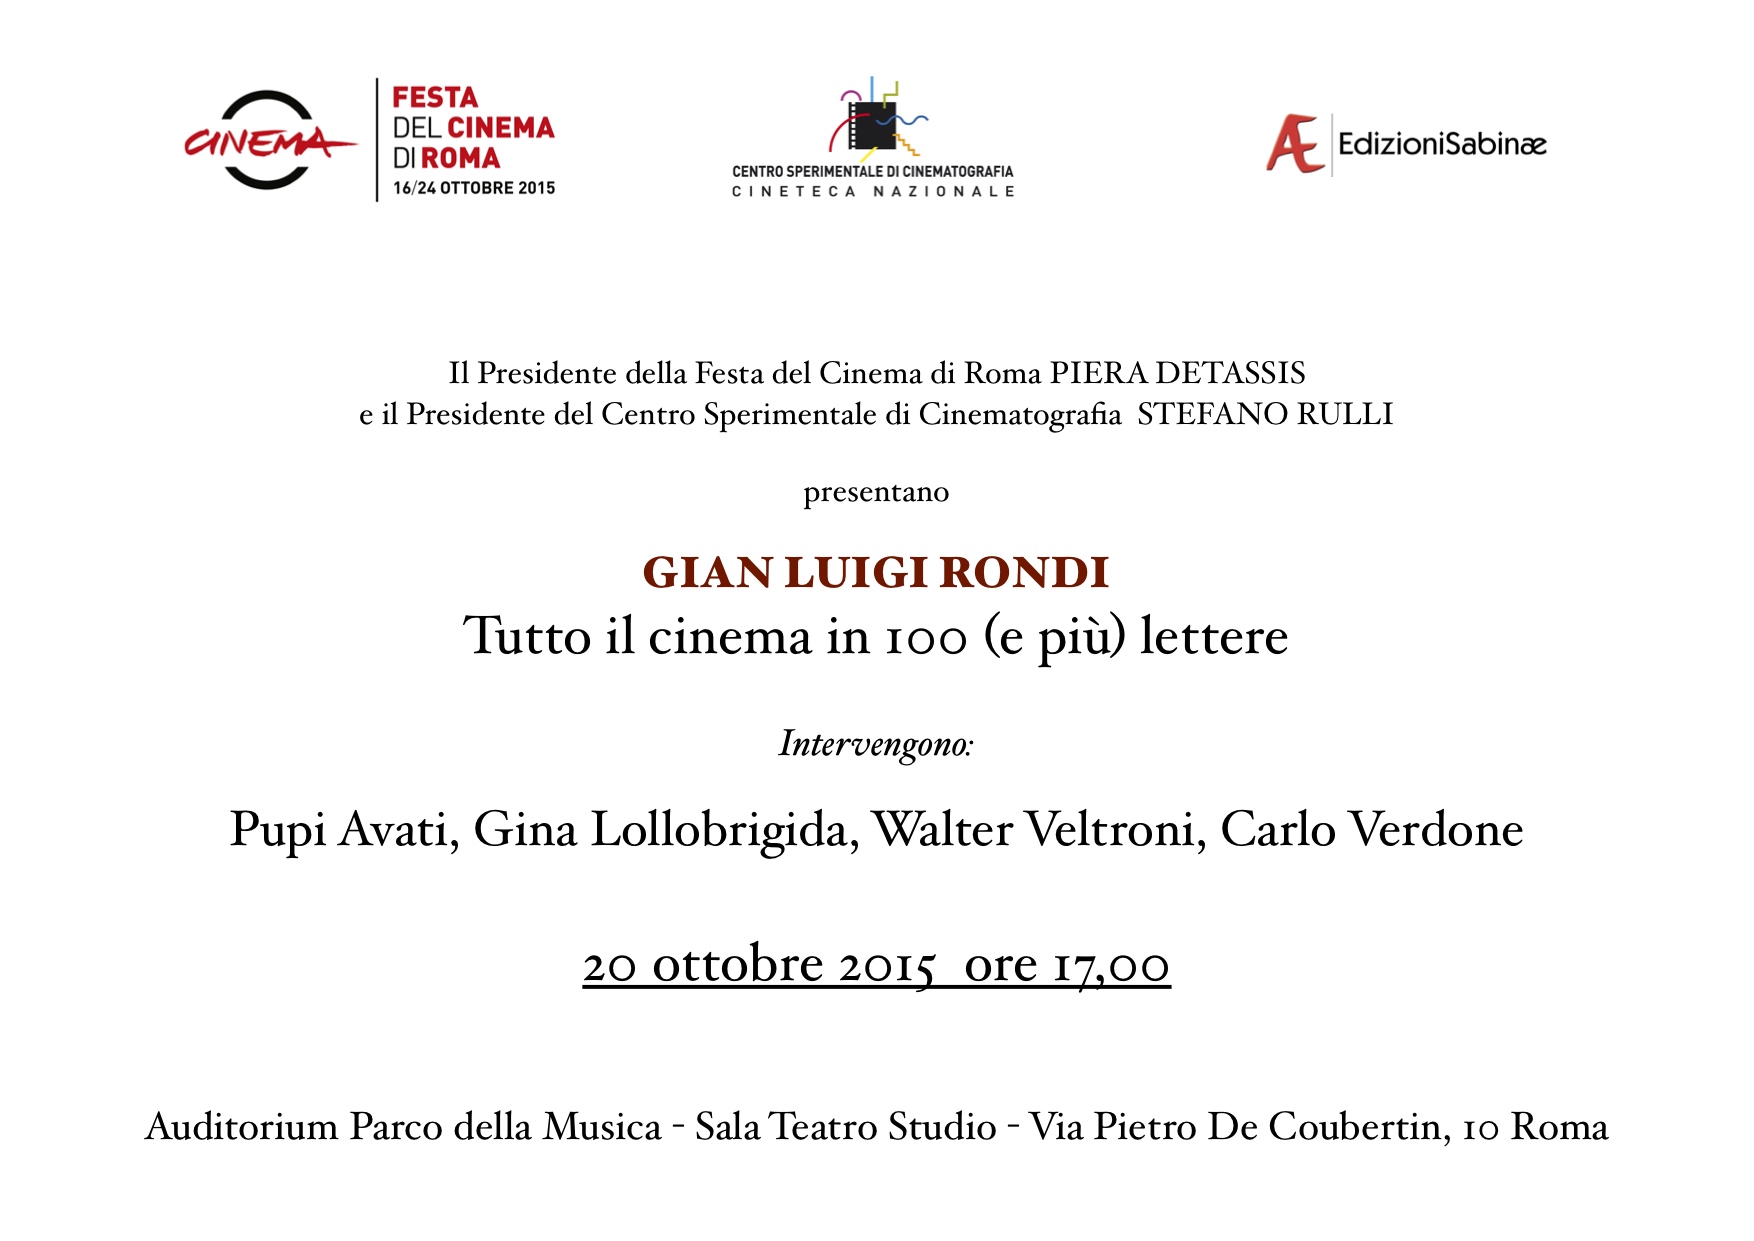 1_Invito 20 ottobre 2015 Gian Luigi Rondi